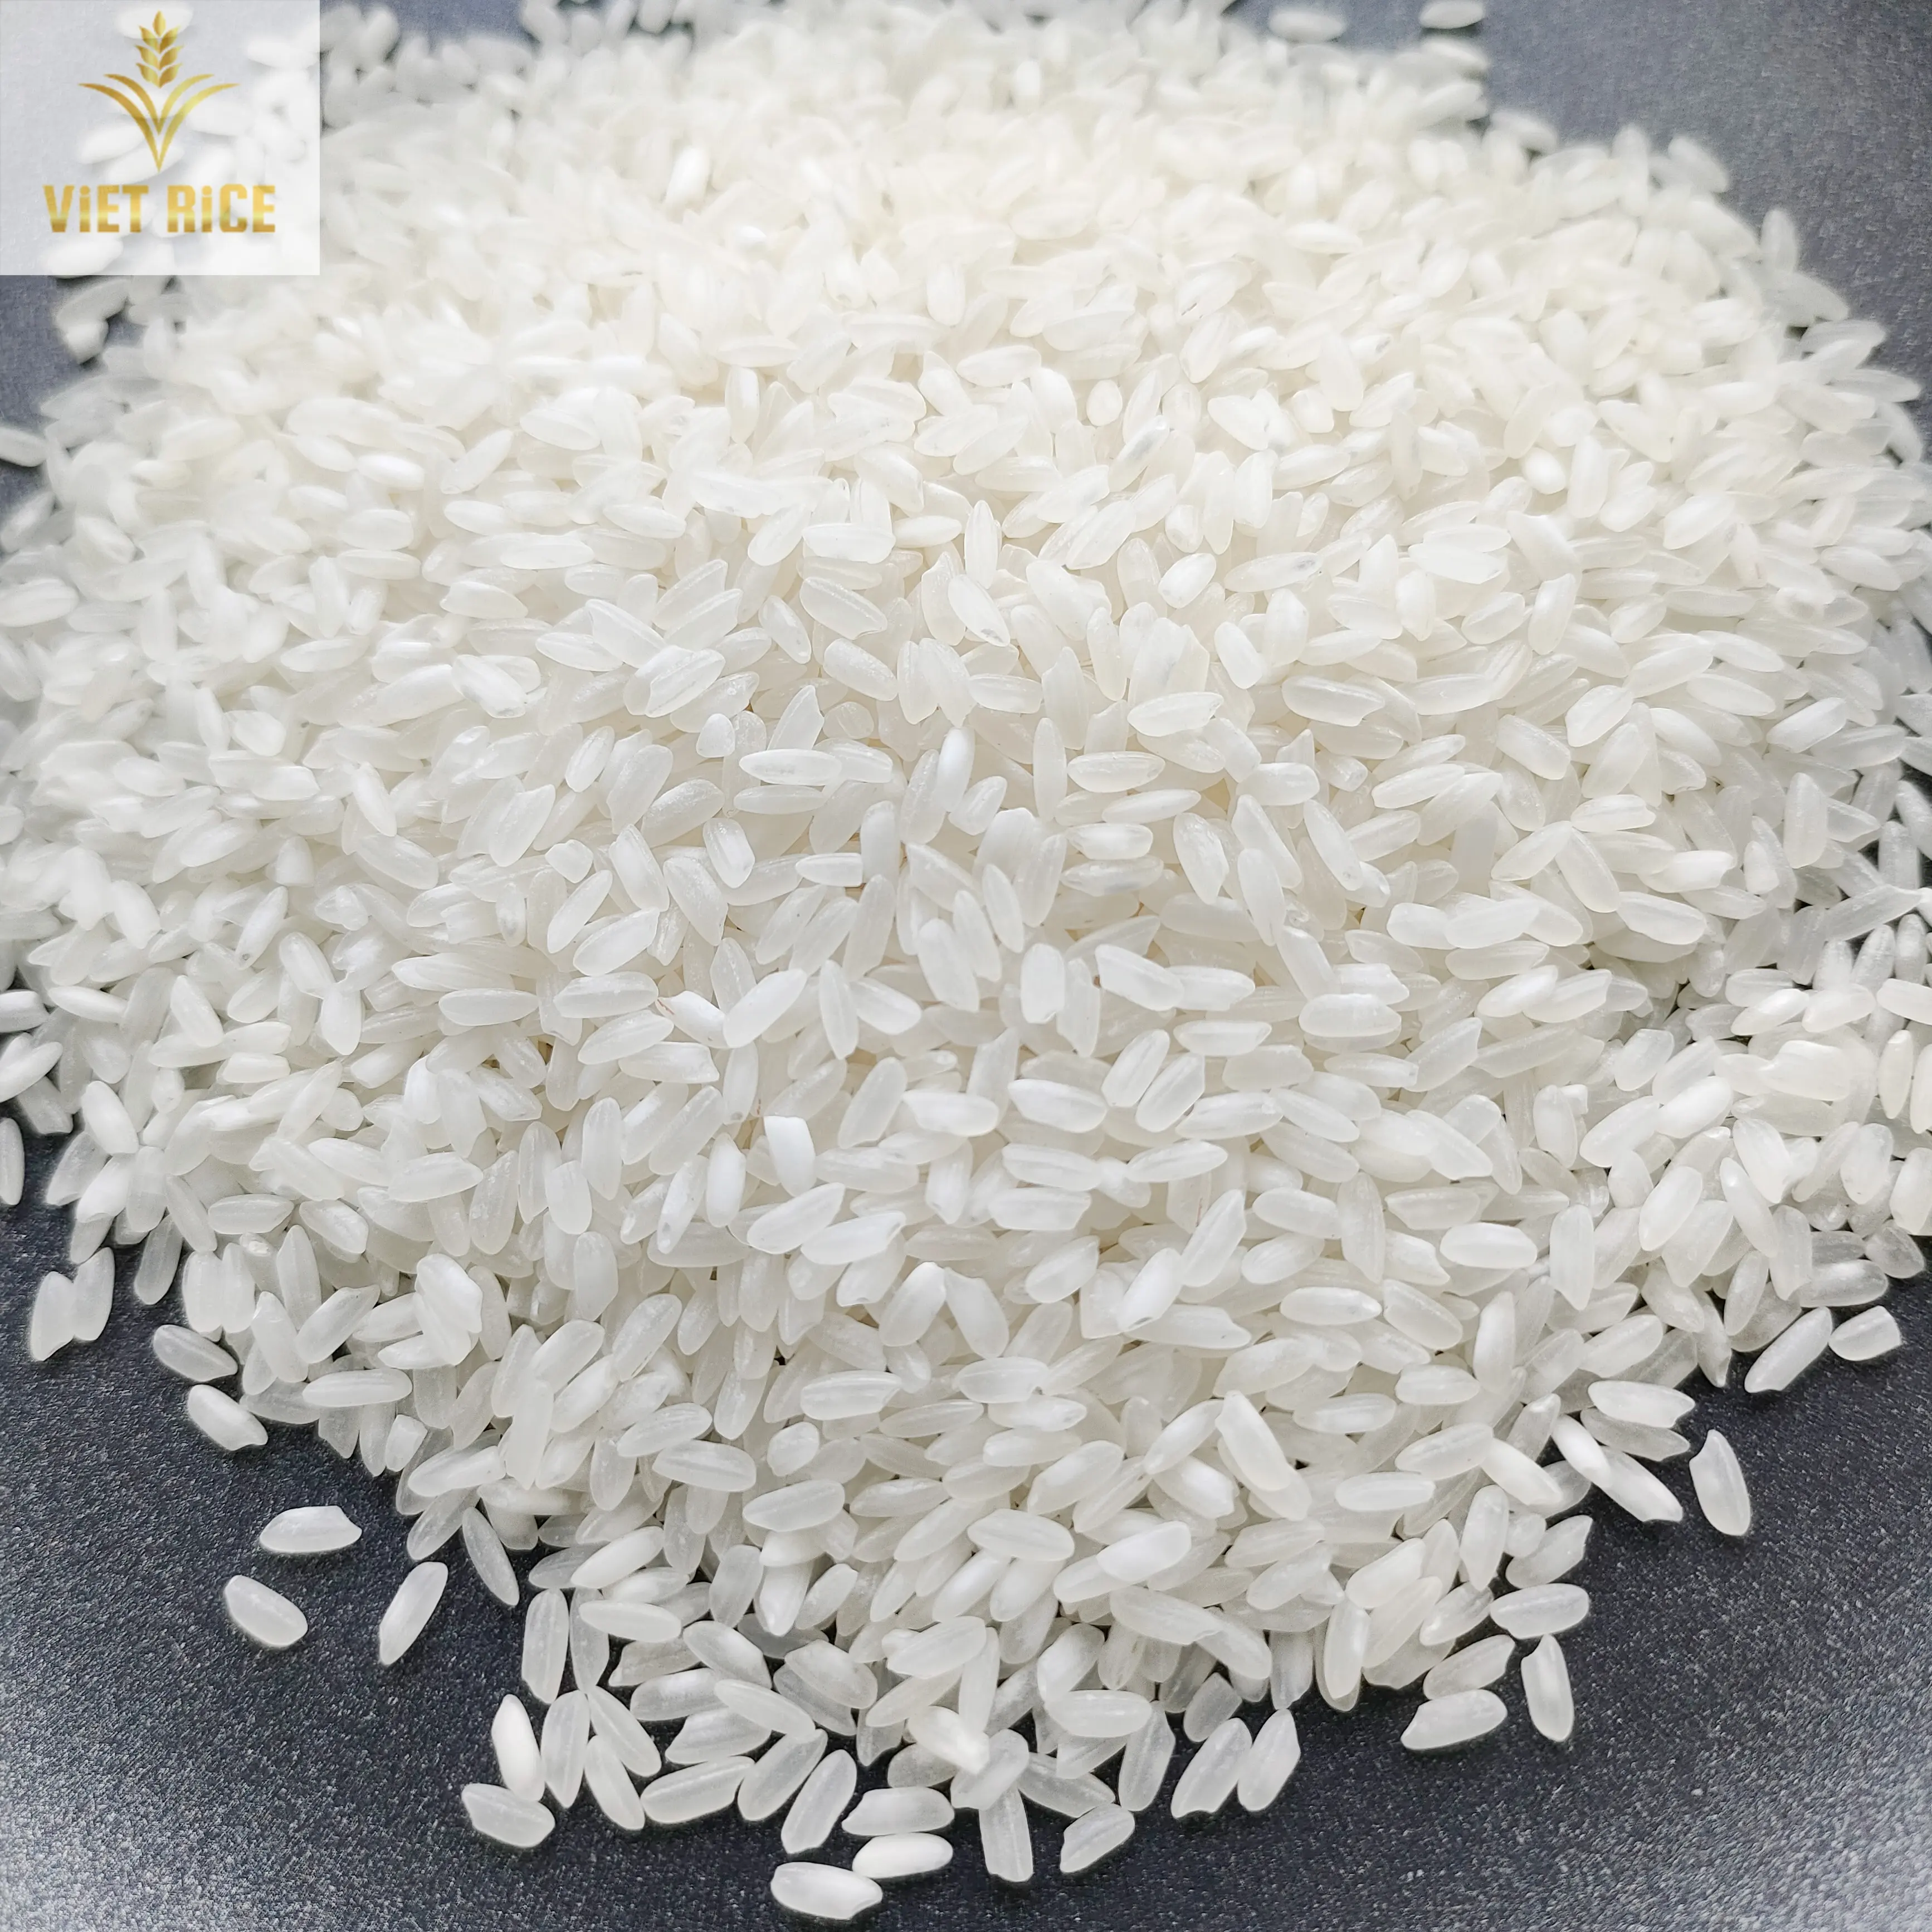 स्वादिष्ट चावल के साथ वियतनाम से सस्ती सुपर मध्यम चावल 5% टूटा है हमेशा दुनिया भर के ग्राहकों प्रदान करने के लिए तैयार